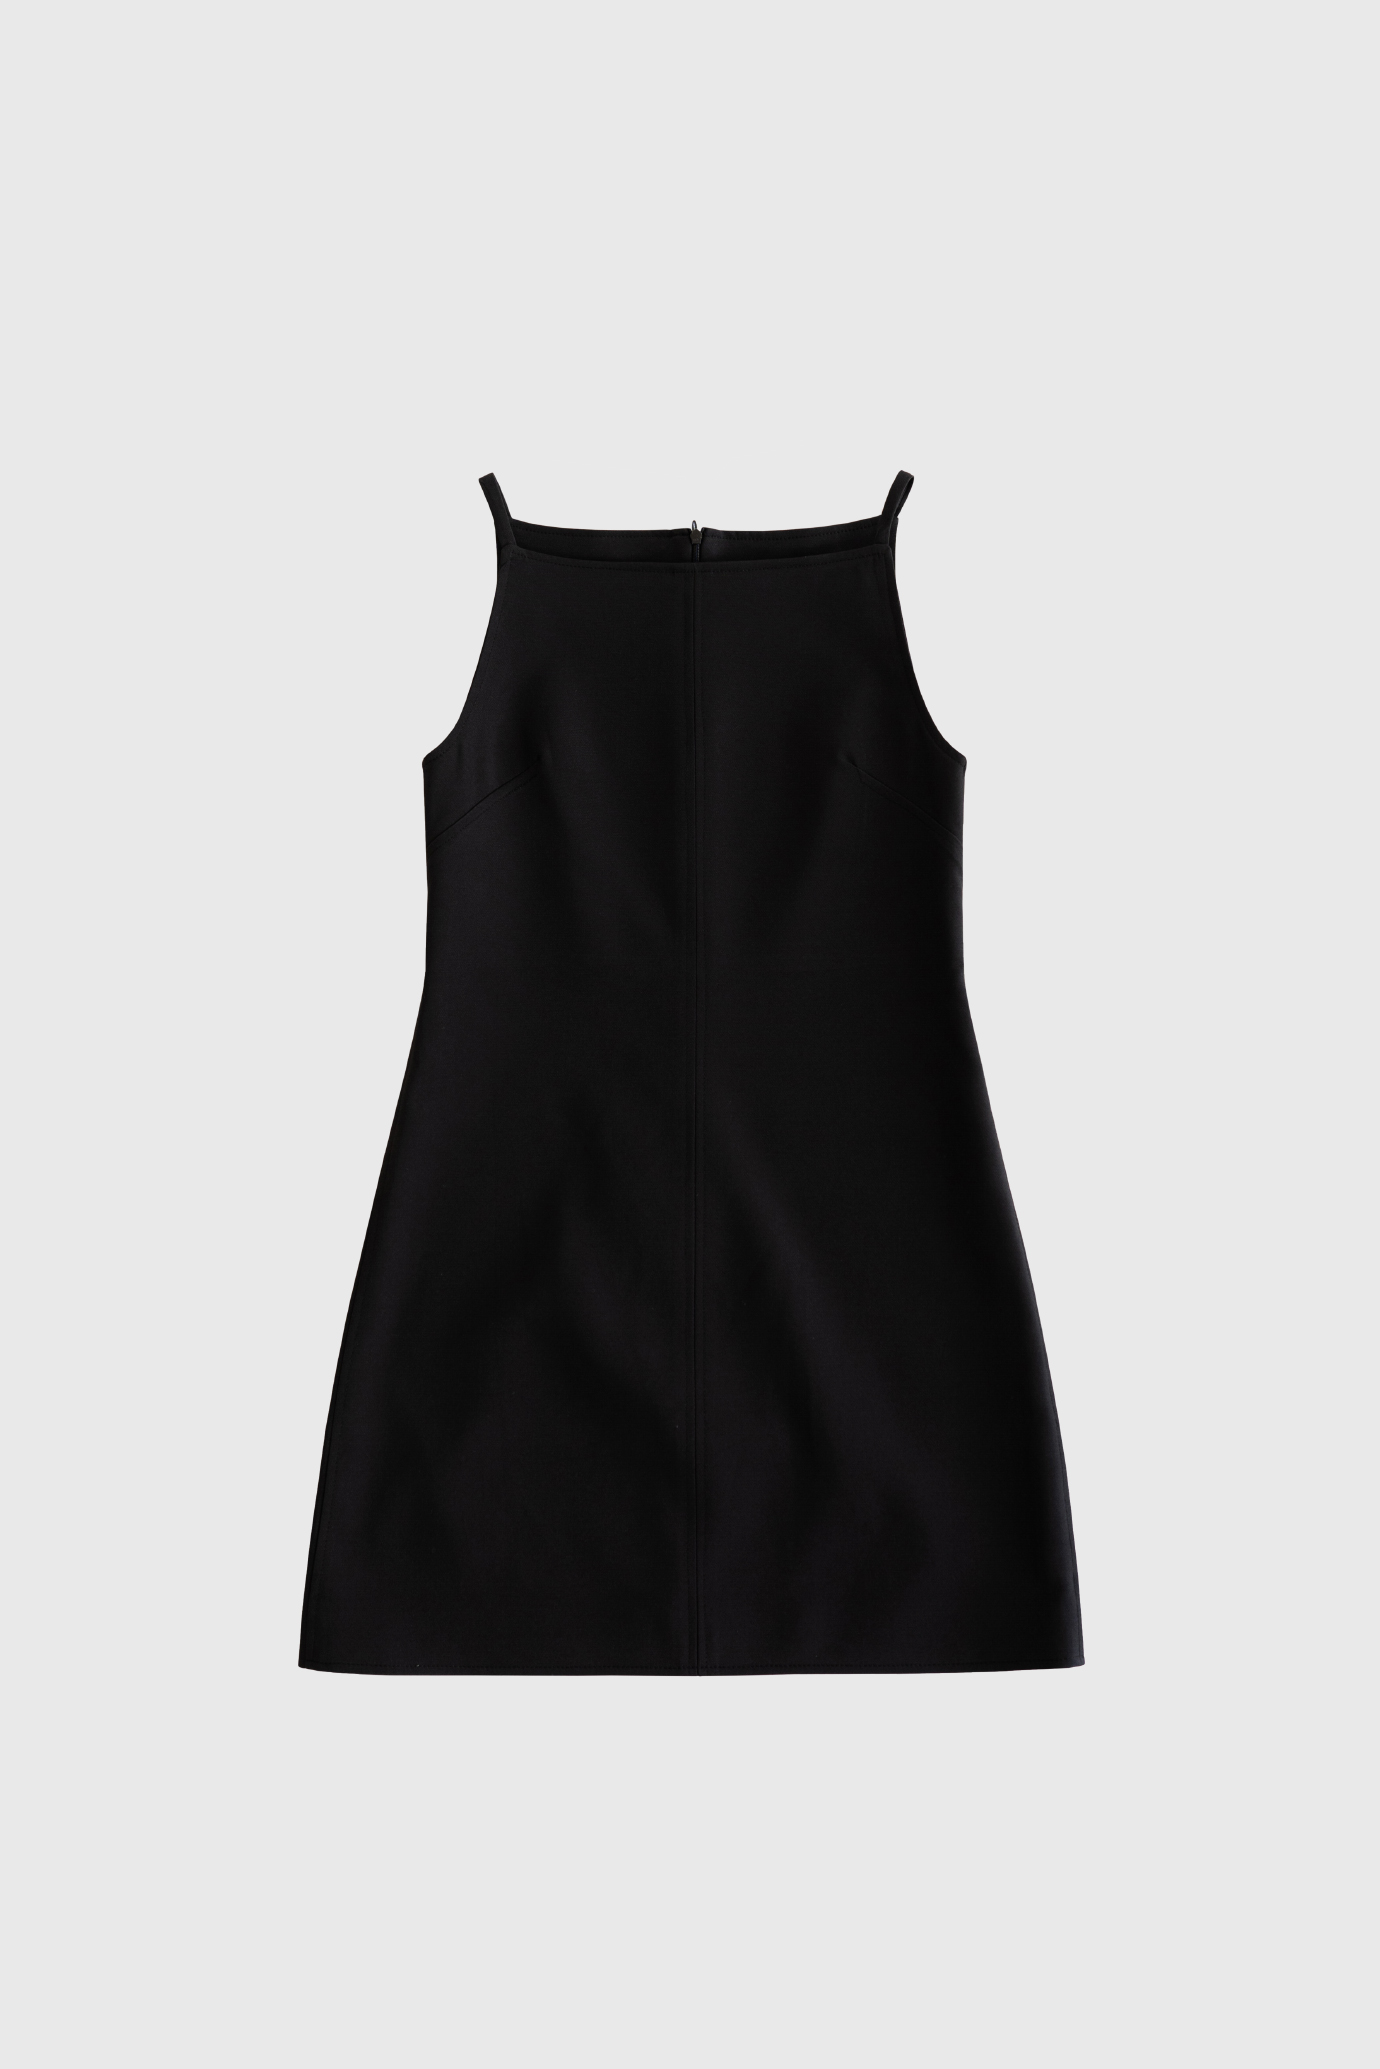 17820_Black Square Dress